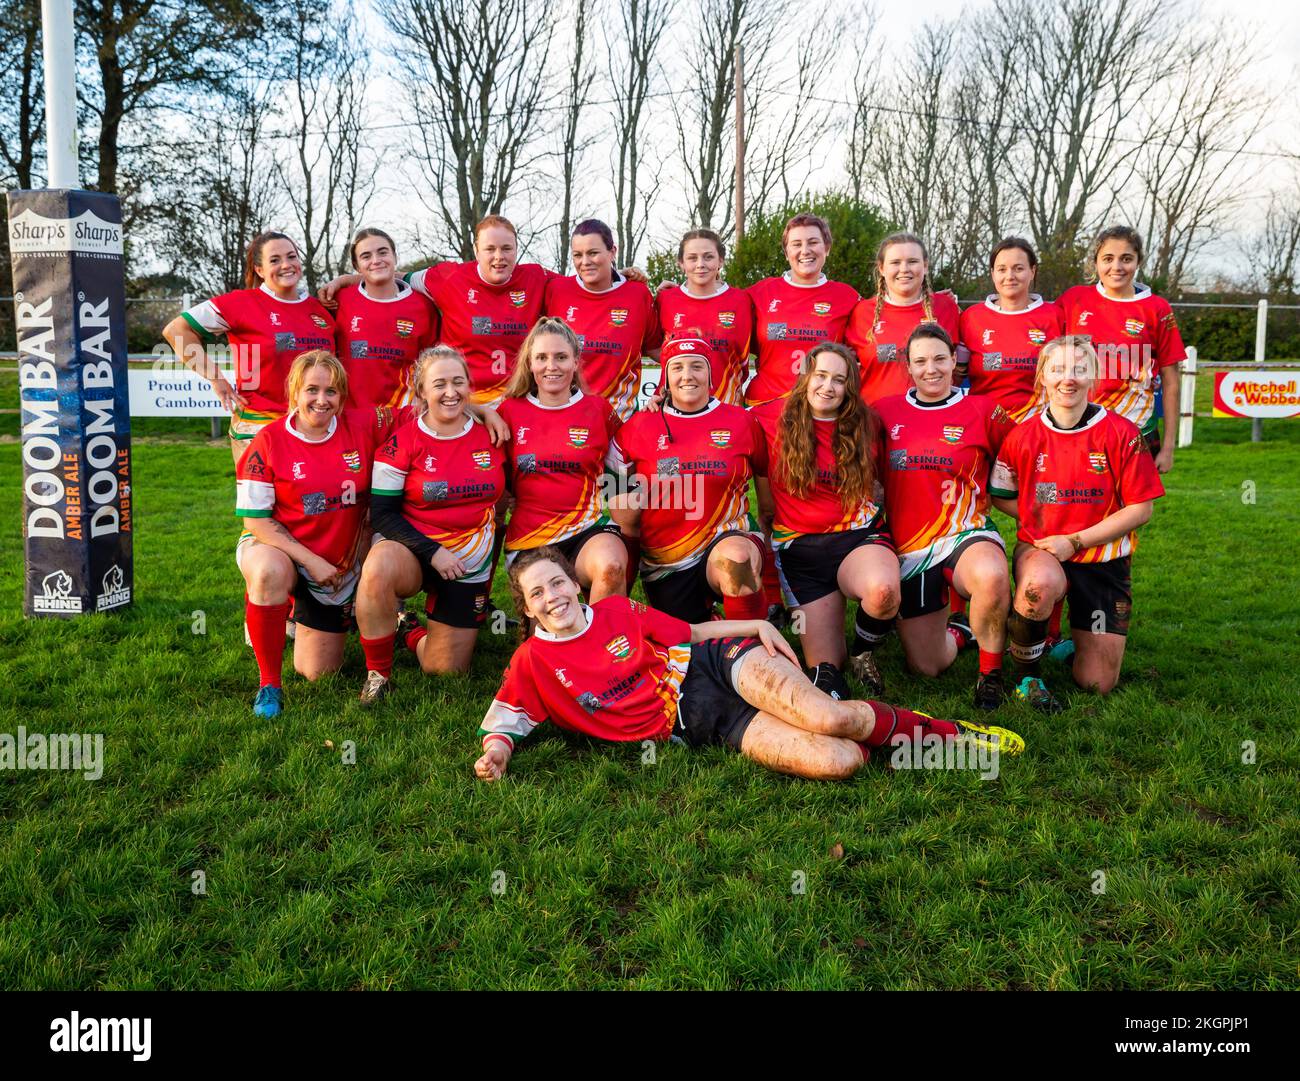 Camborne Dames Rugby team pose pour une photo d'équipe/de groupe à Camborne, Cornwall Banque D'Images